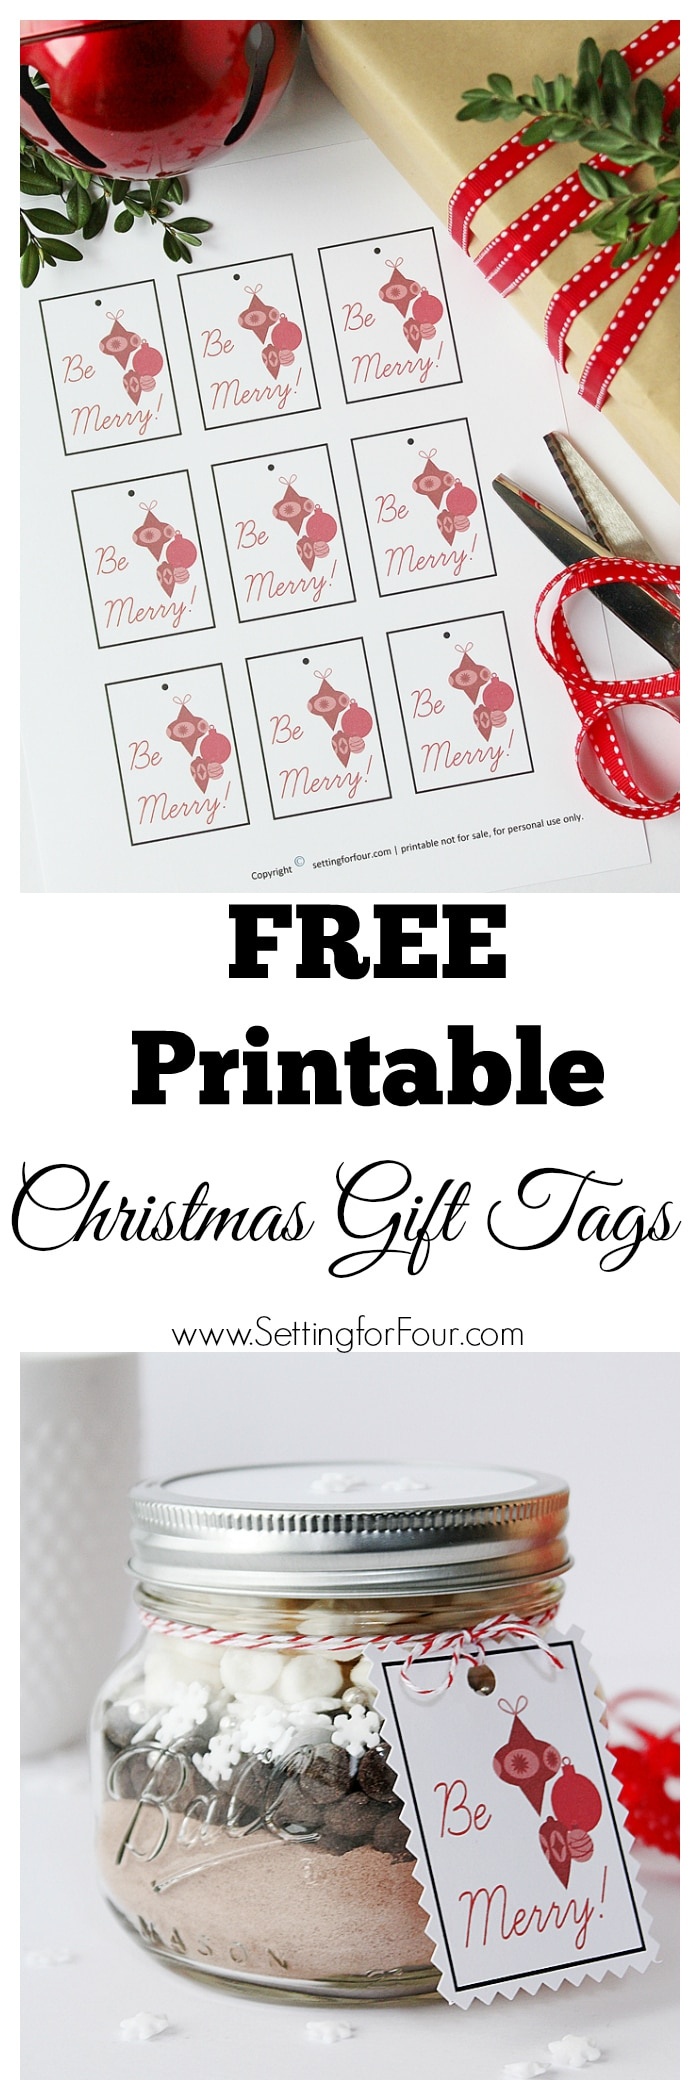 Free Printable Christmas Gift Tags - Setting For Four - Diy Christmas Gift Tags Free Printable